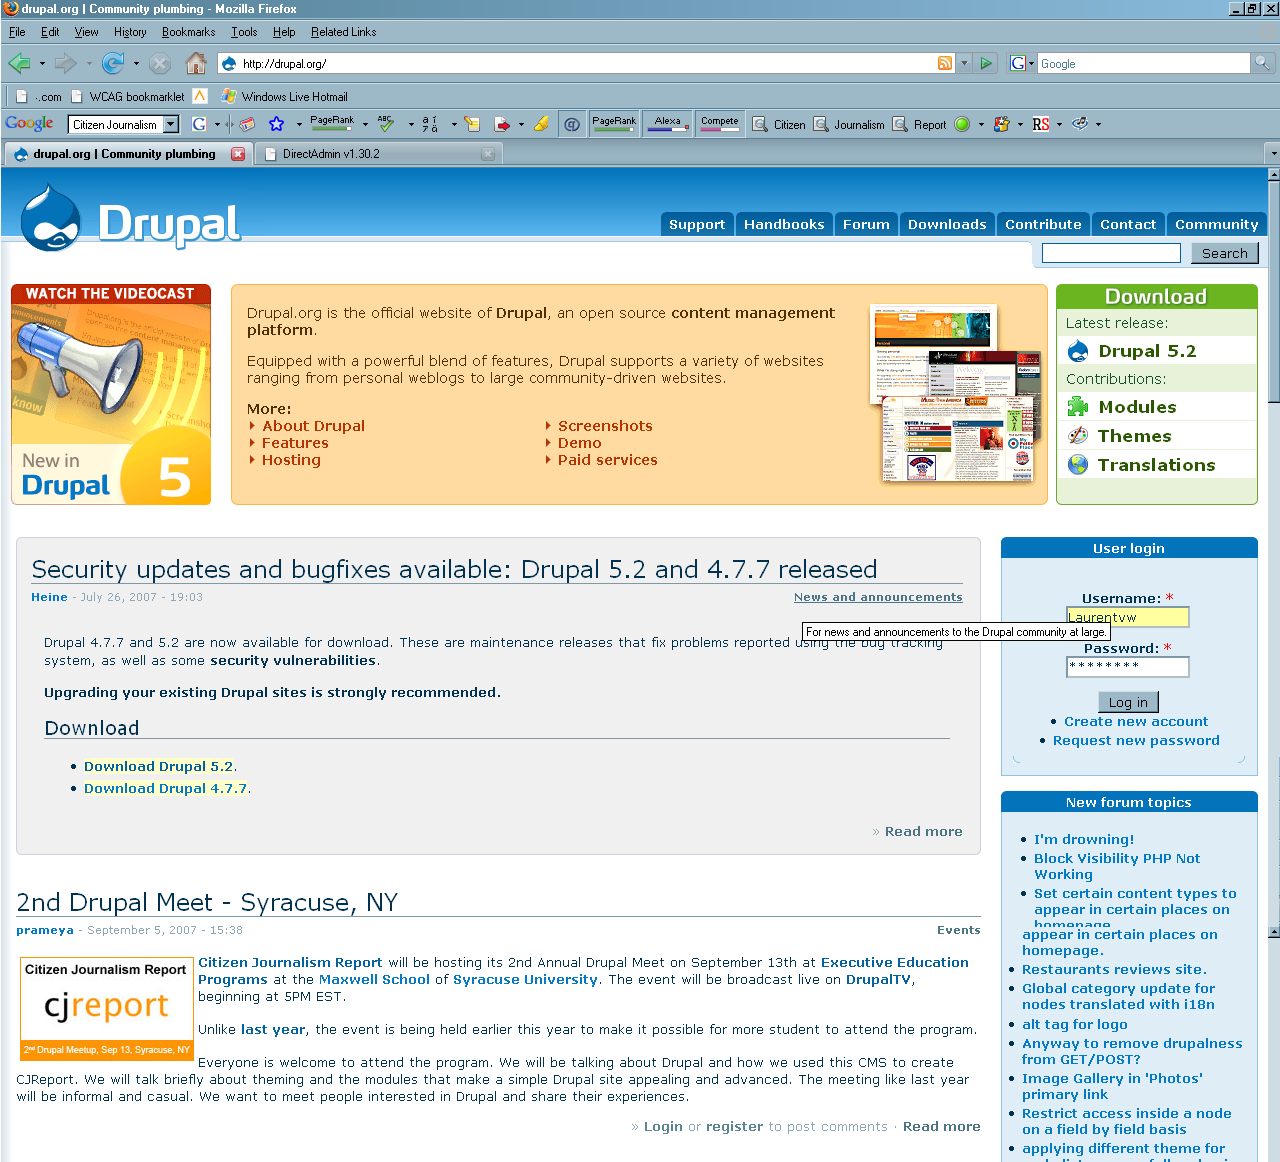 CJReport on the Drupal homepage